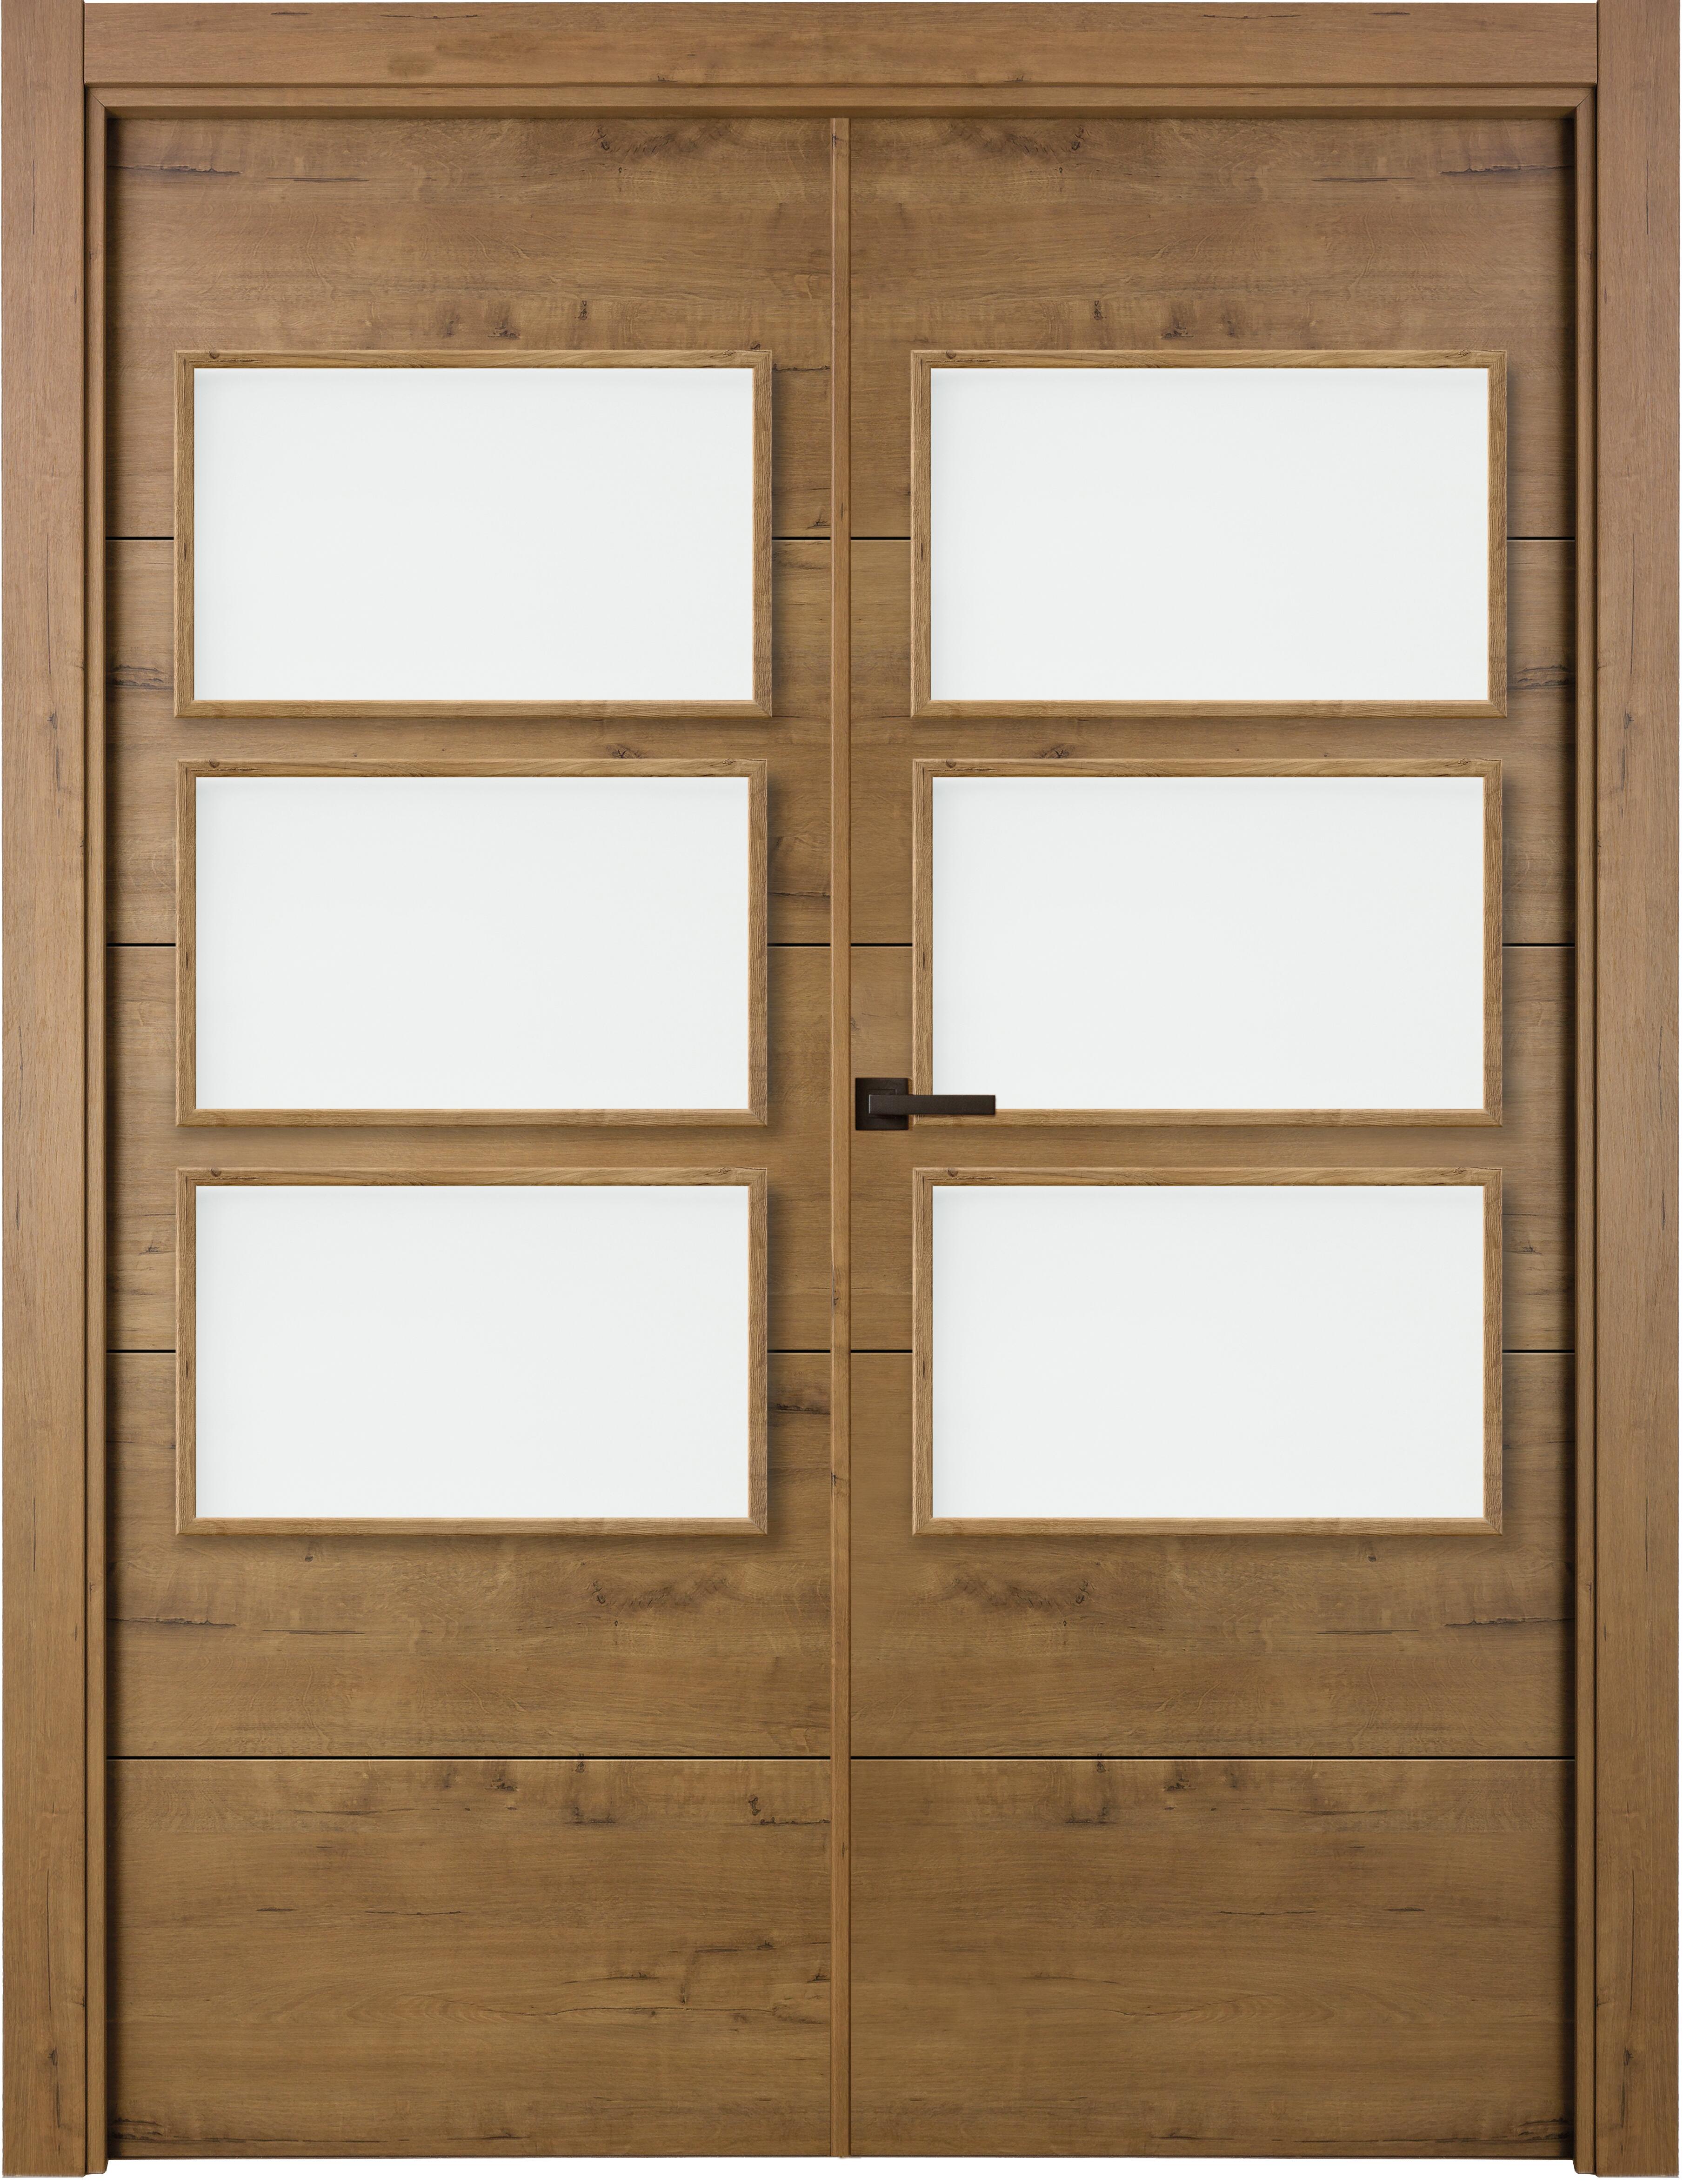 Puerta berna gold doble con vidriera de apertura derecha de 125 x 203 x 11 cm